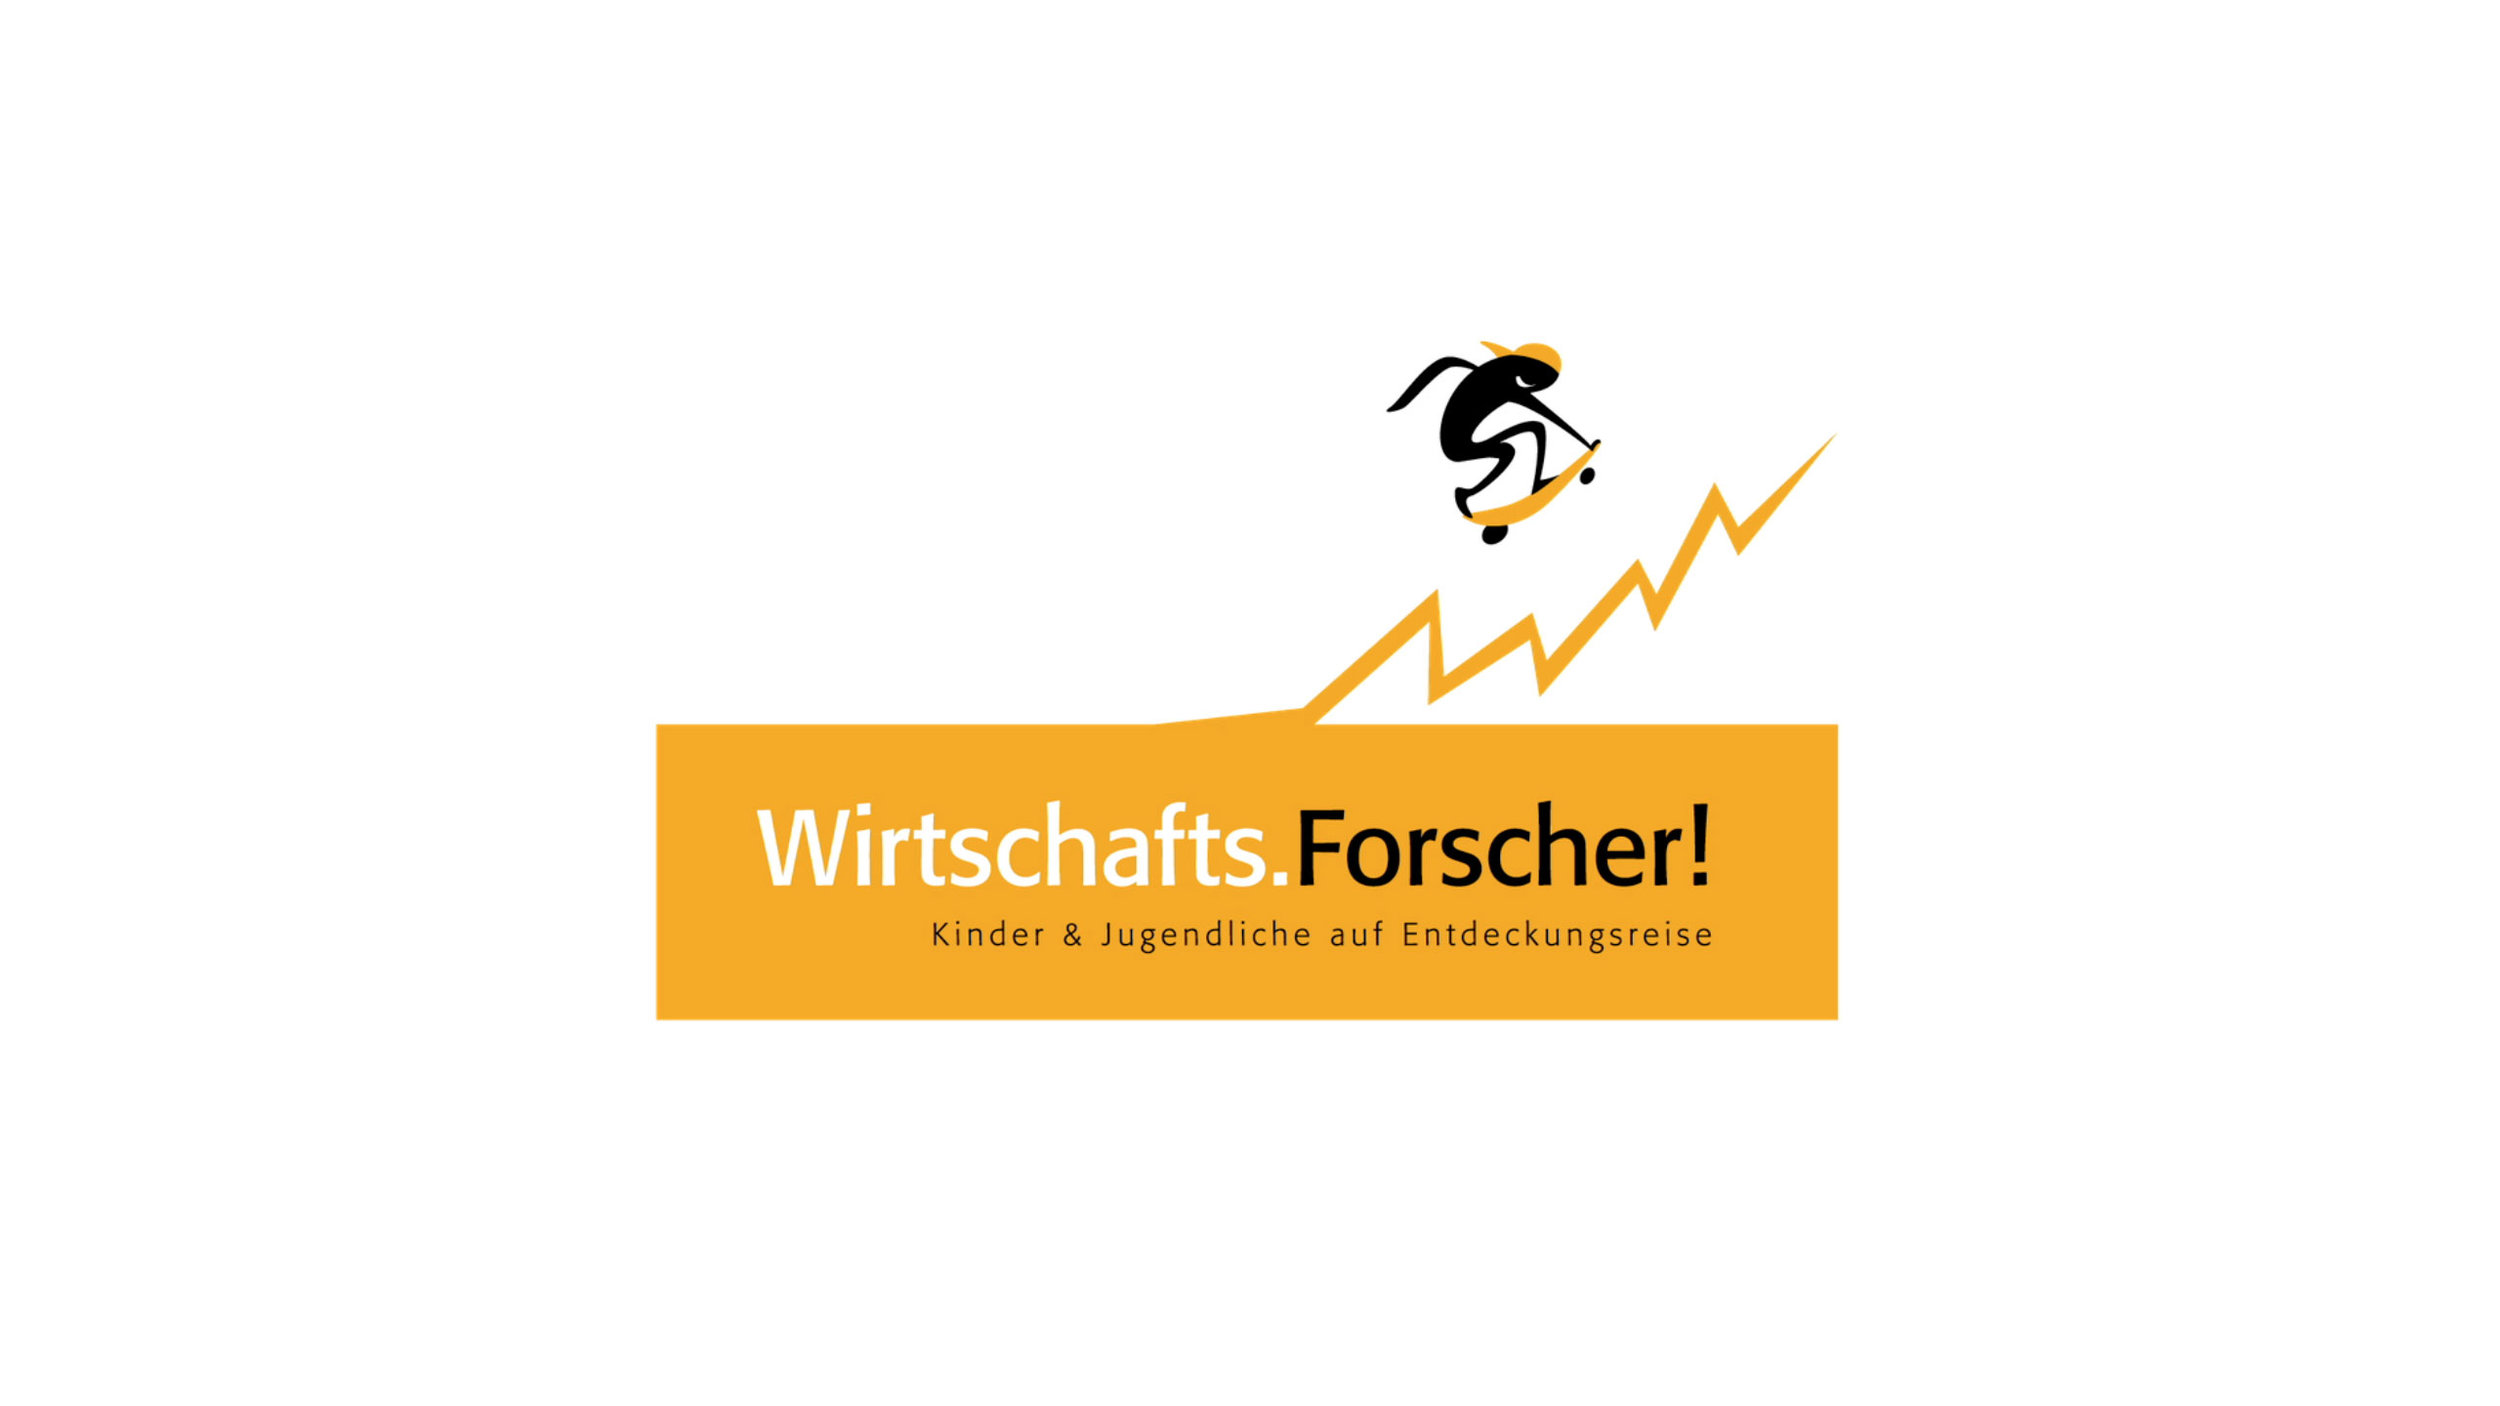 WIRTSCHAFTS.FORSCHER!_1.jpg